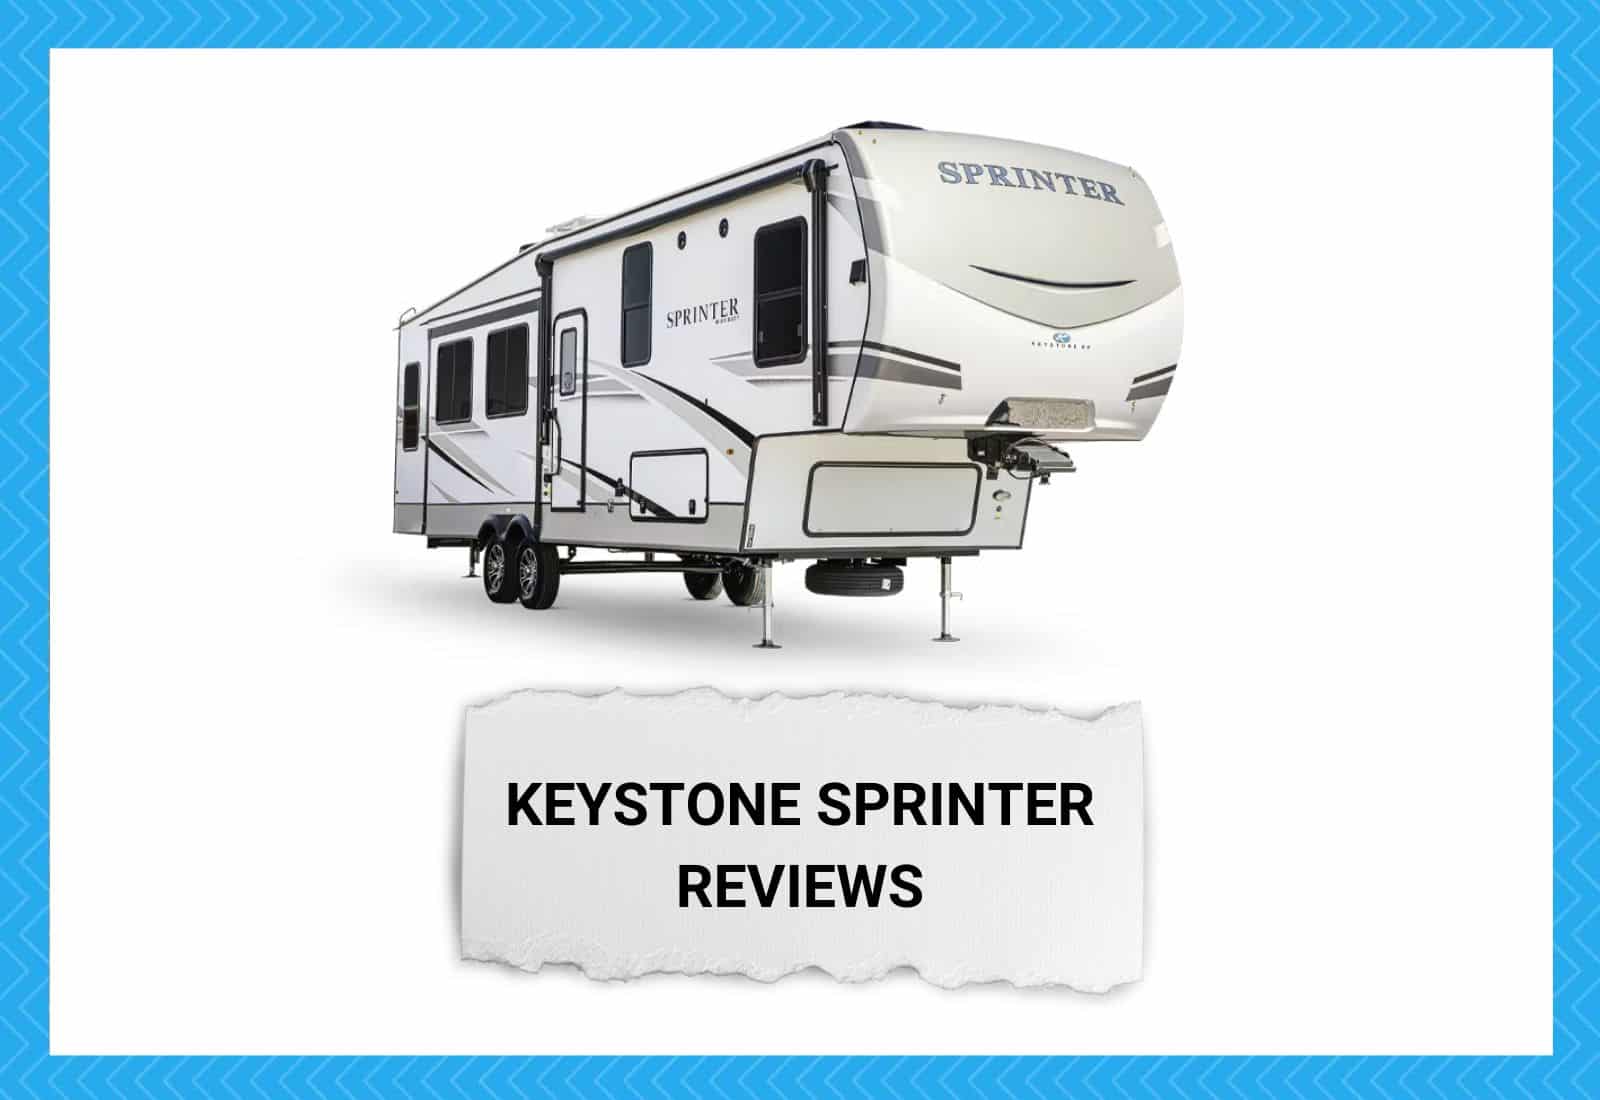 Keystone Sprinter Reviews